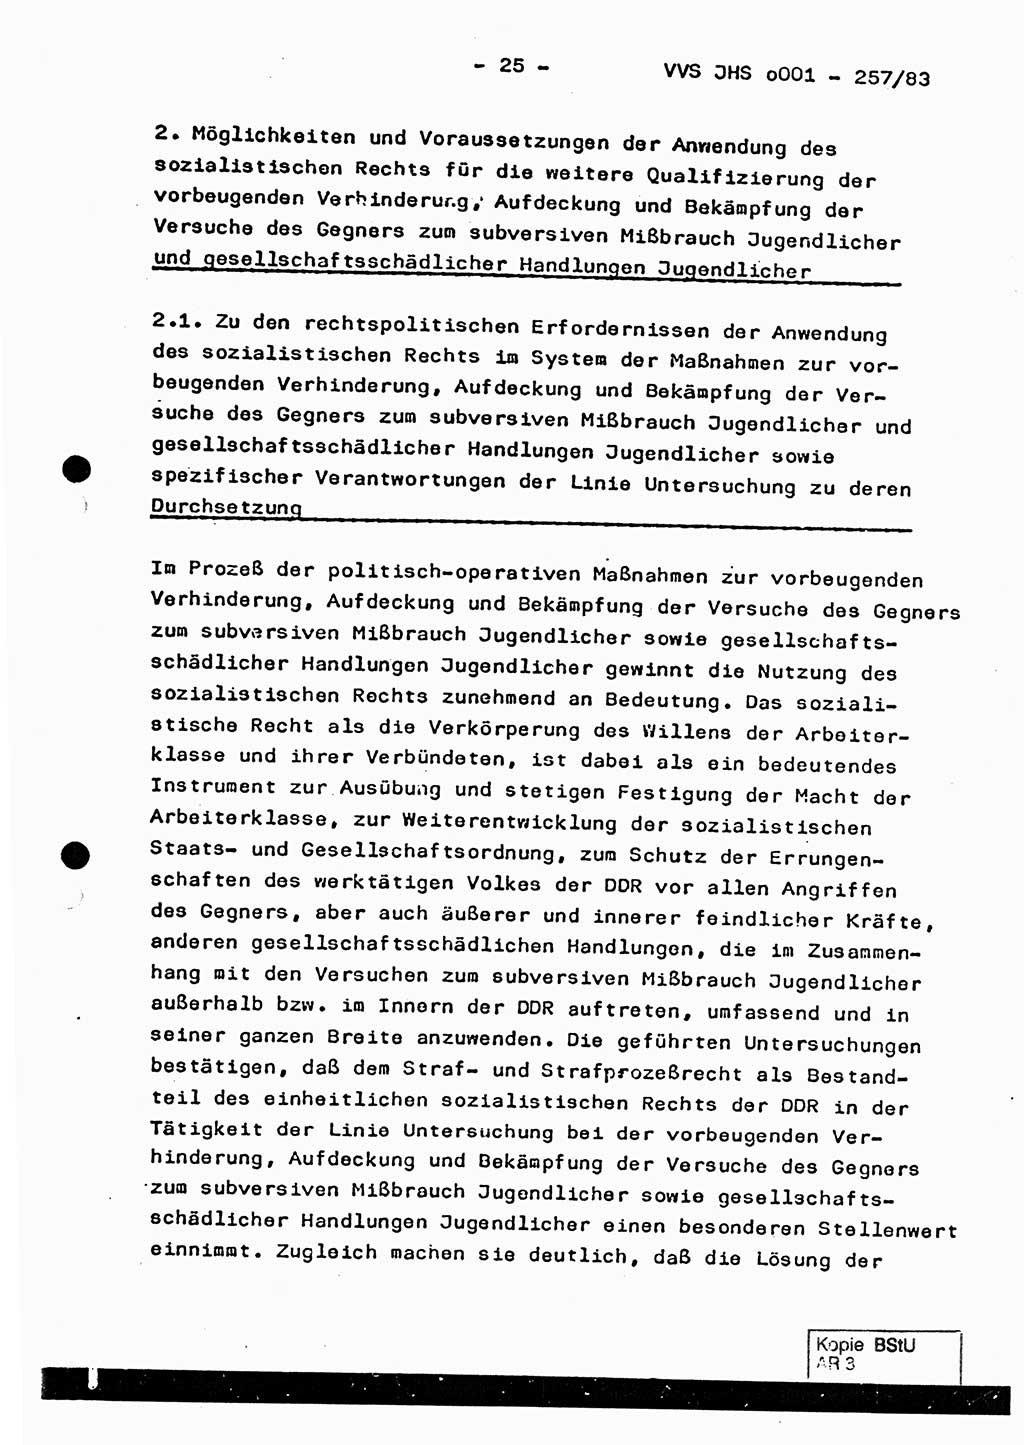 Dissertation, Oberst Helmut Lubas (BV Mdg.), Oberstleutnant Manfred Eschberger (HA IX), Oberleutnant Hans-Jürgen Ludwig (JHS), Ministerium für Staatssicherheit (MfS) [Deutsche Demokratische Republik (DDR)], Juristische Hochschule (JHS), Vertrauliche Verschlußsache (VVS) o001-257/83, Potsdam 1983, Seite 25 (Diss. MfS DDR JHS VVS o001-257/83 1983, S. 25)